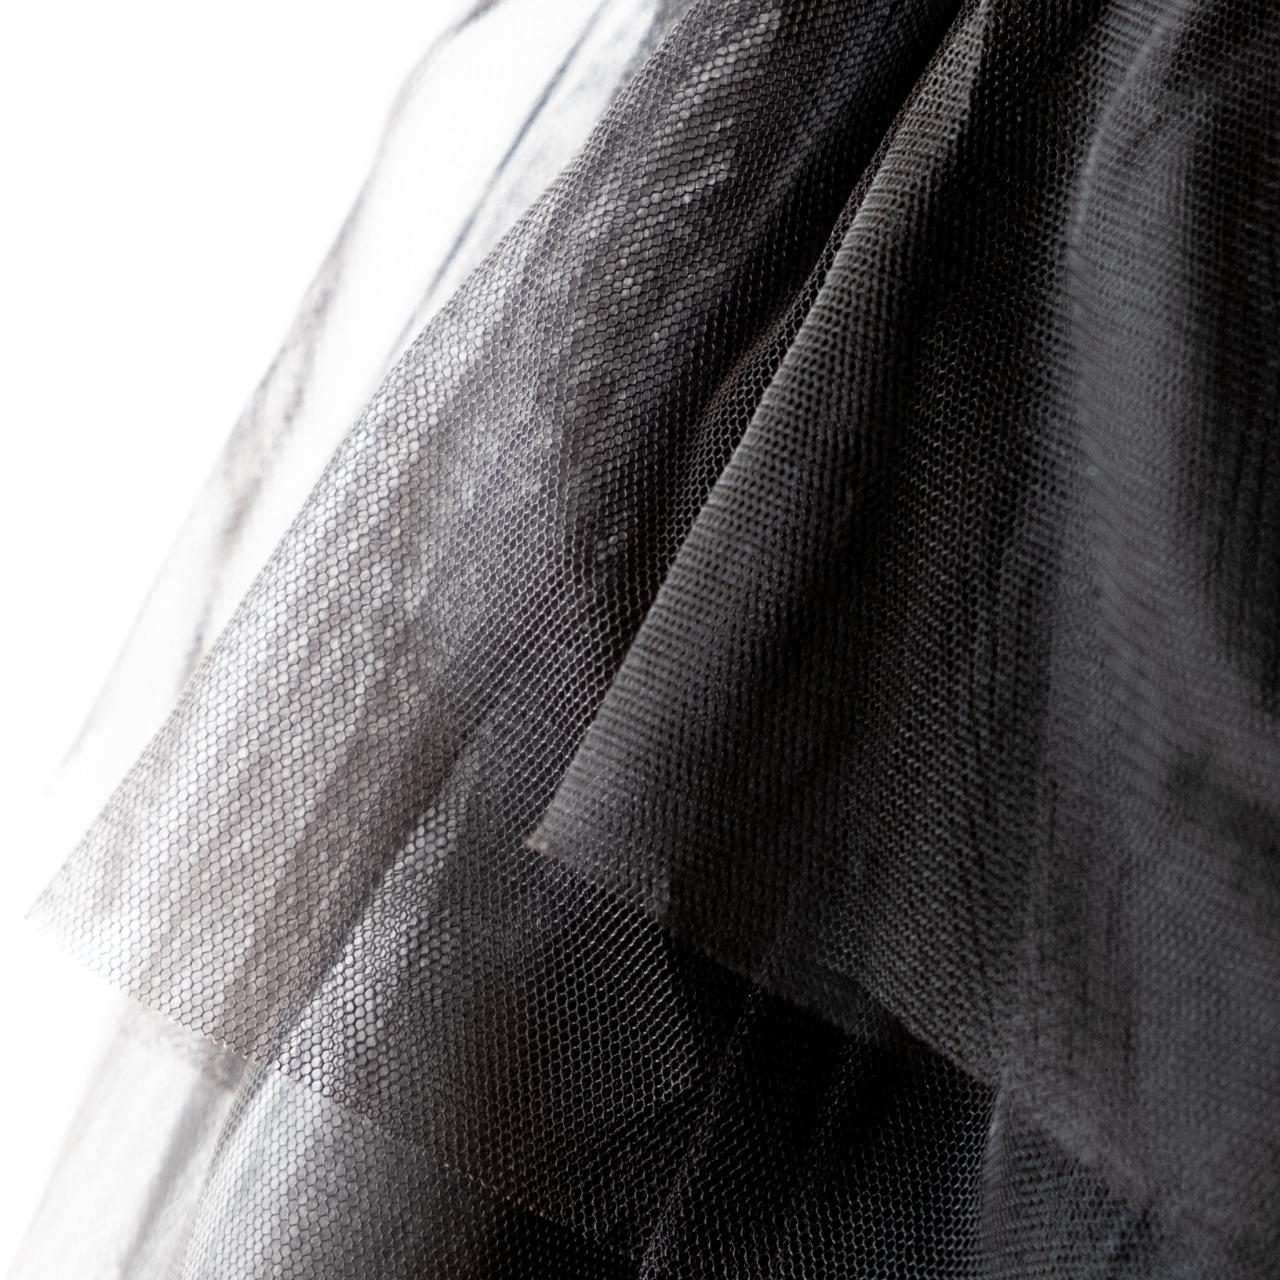 Product Image 4 - Black voluminous tutu / loli